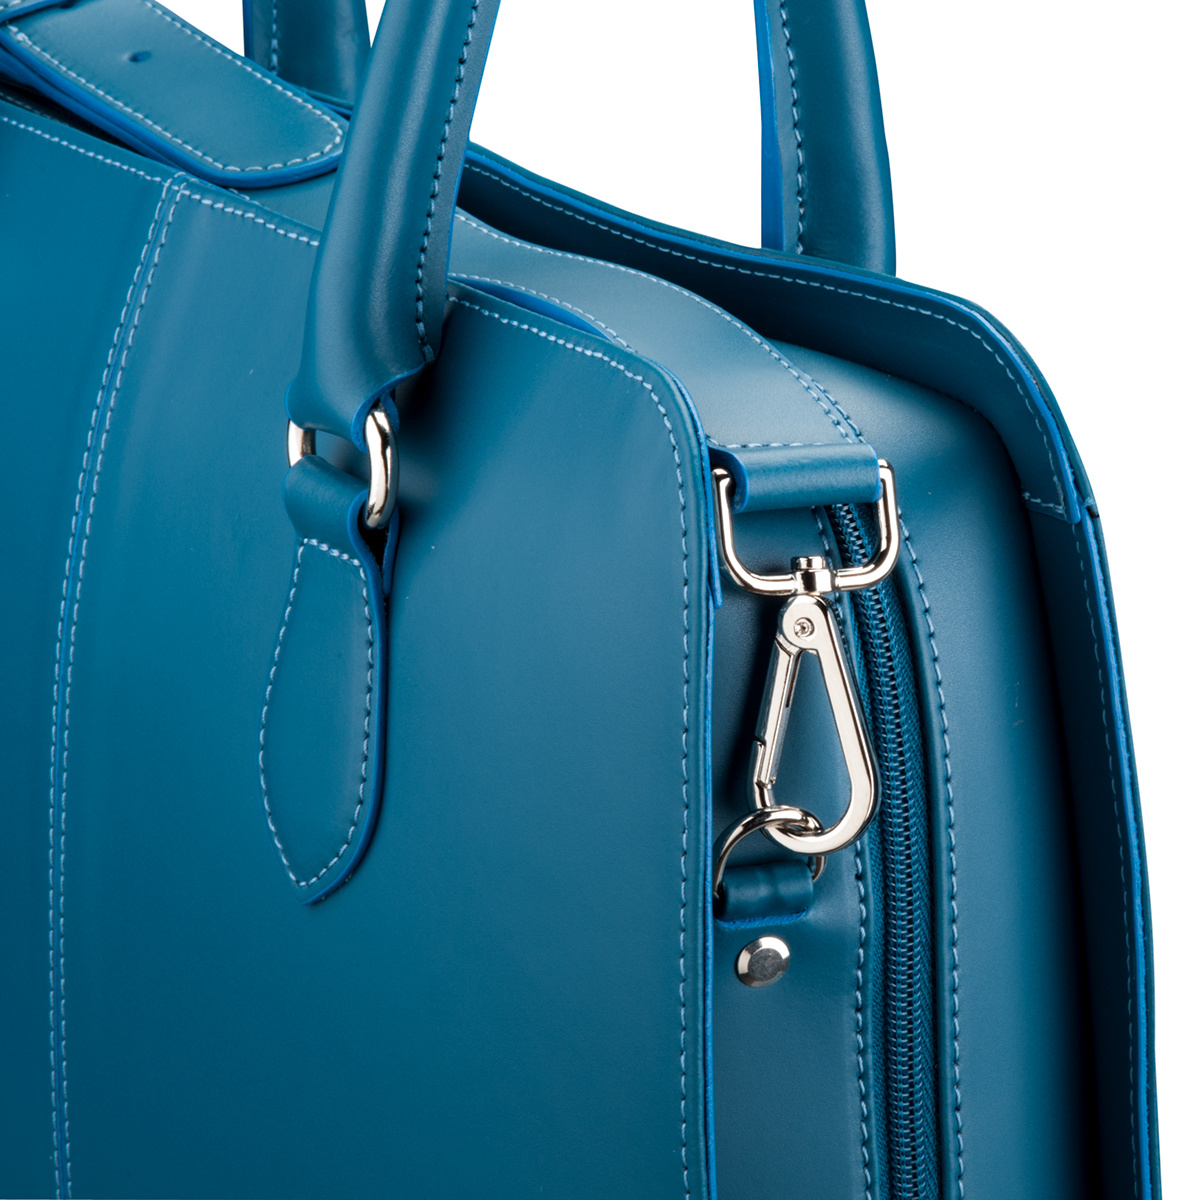 Shoulder Strap for Women 13.3 and 15.6 inch Laptop Bag - Messenger Bag - Split Leather - Turquoise-2